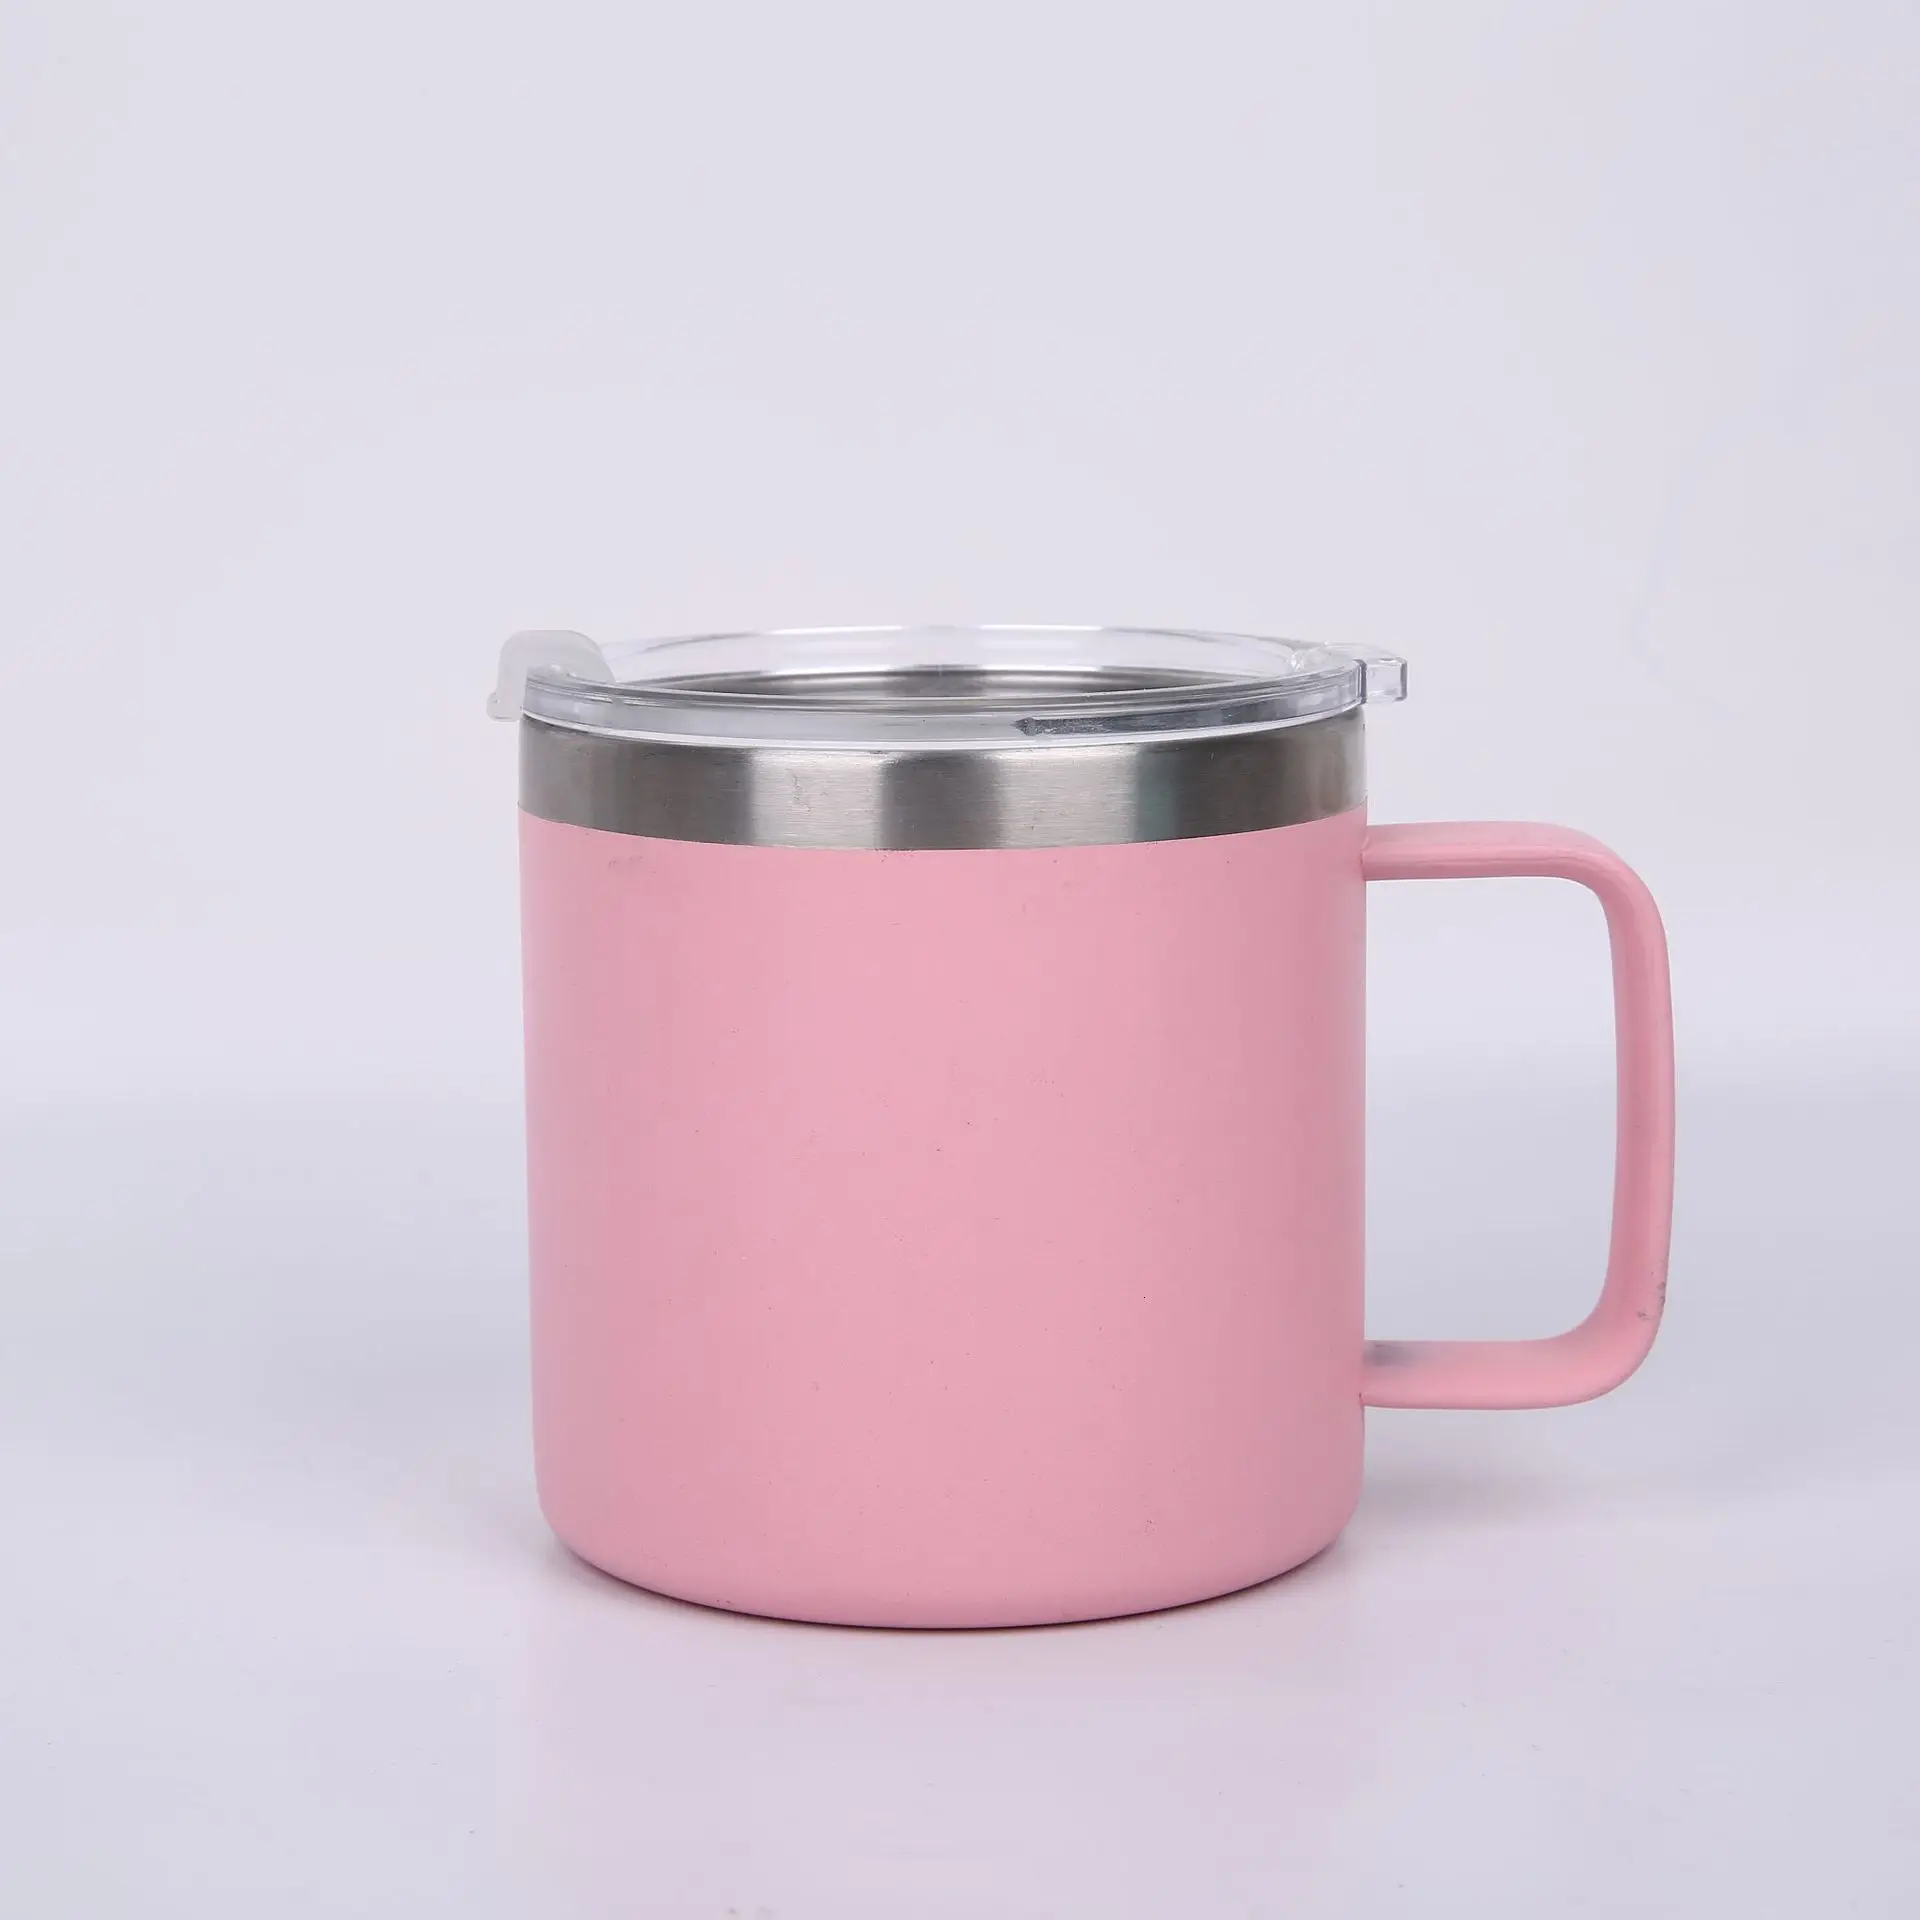 14 унций, чашка из нержавеющей стали с вакуумной изоляцией, Термокружка для кофе с крышкой, детская чашка с ручкой, сохраняющая горячий кофе, чай, пиво, вода, вино, термо - Цвет: Pink